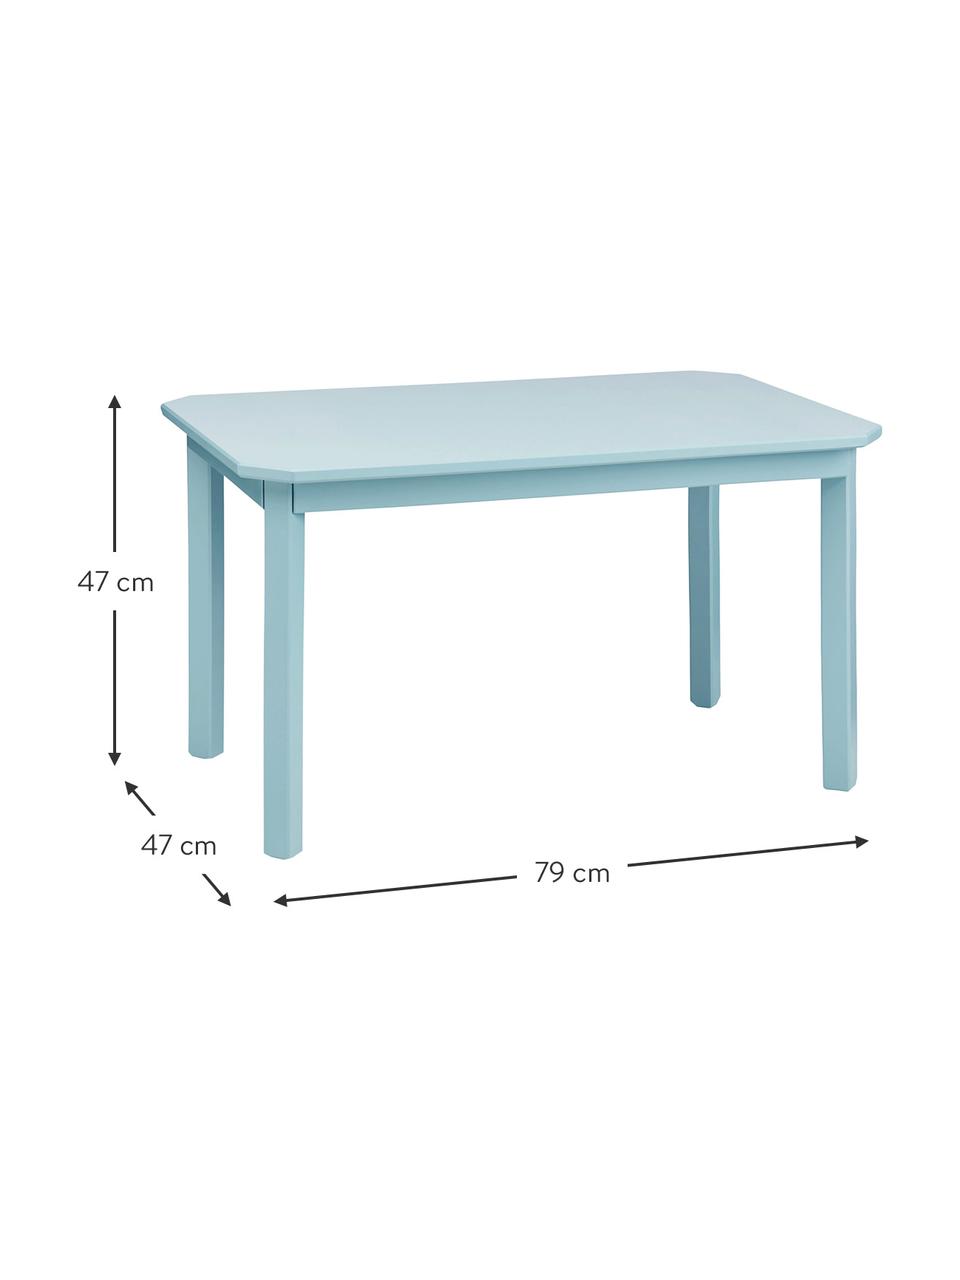 Dětský dřevěný stůl Harlequin, Březové dřevo, dřevovláknitá deska se střední hustotou (MDF), natřená barvou bez VOC, Modrá, Š 79 cm, V 47 cm